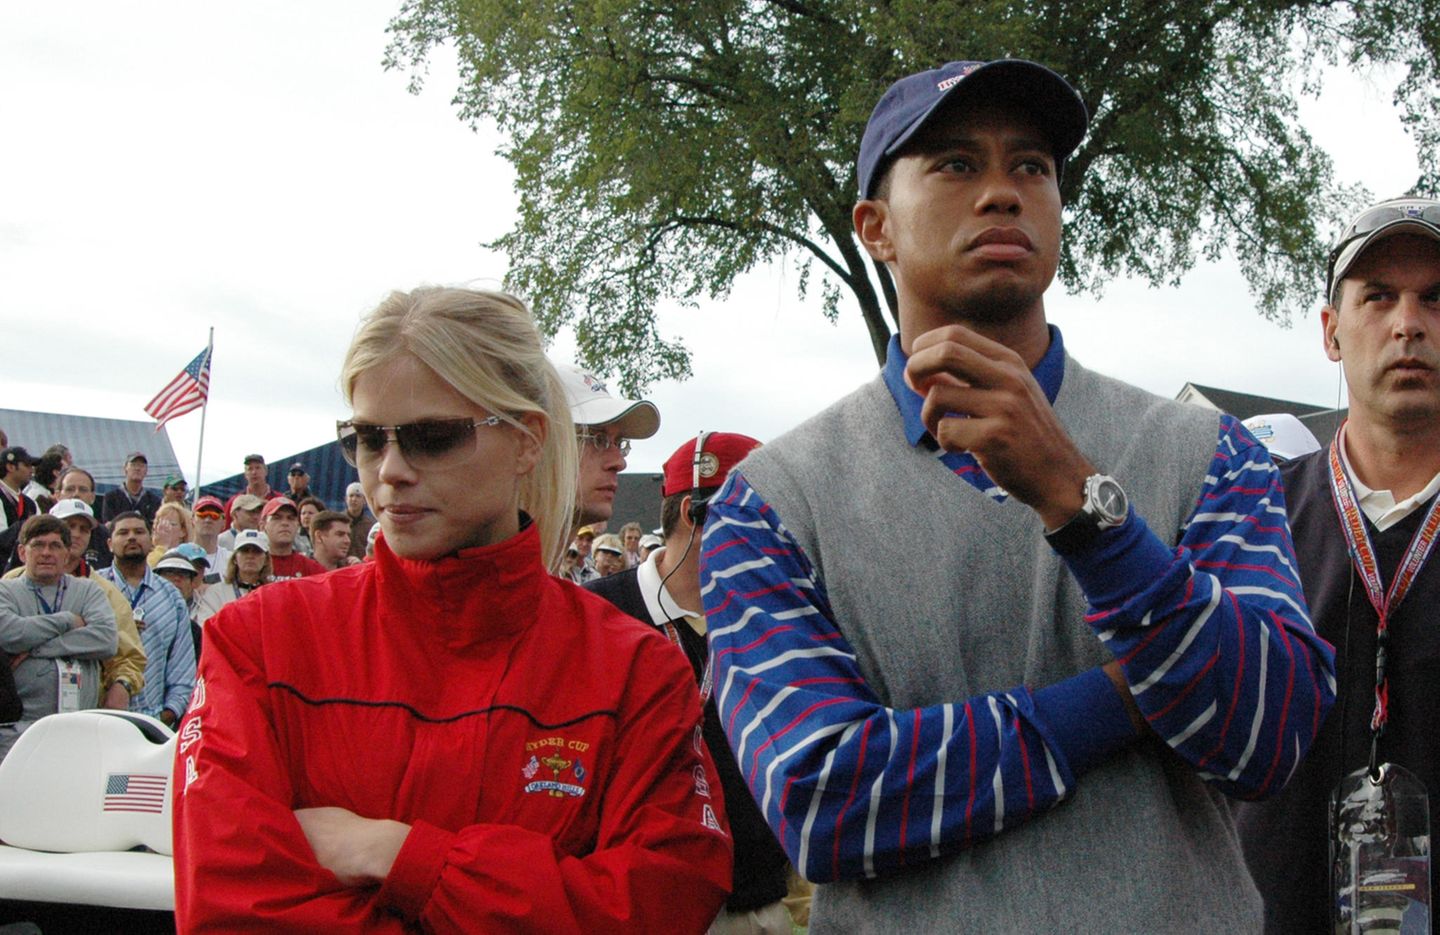 Promi-Scheidungen: Tiger Woods und Elin Nordegren